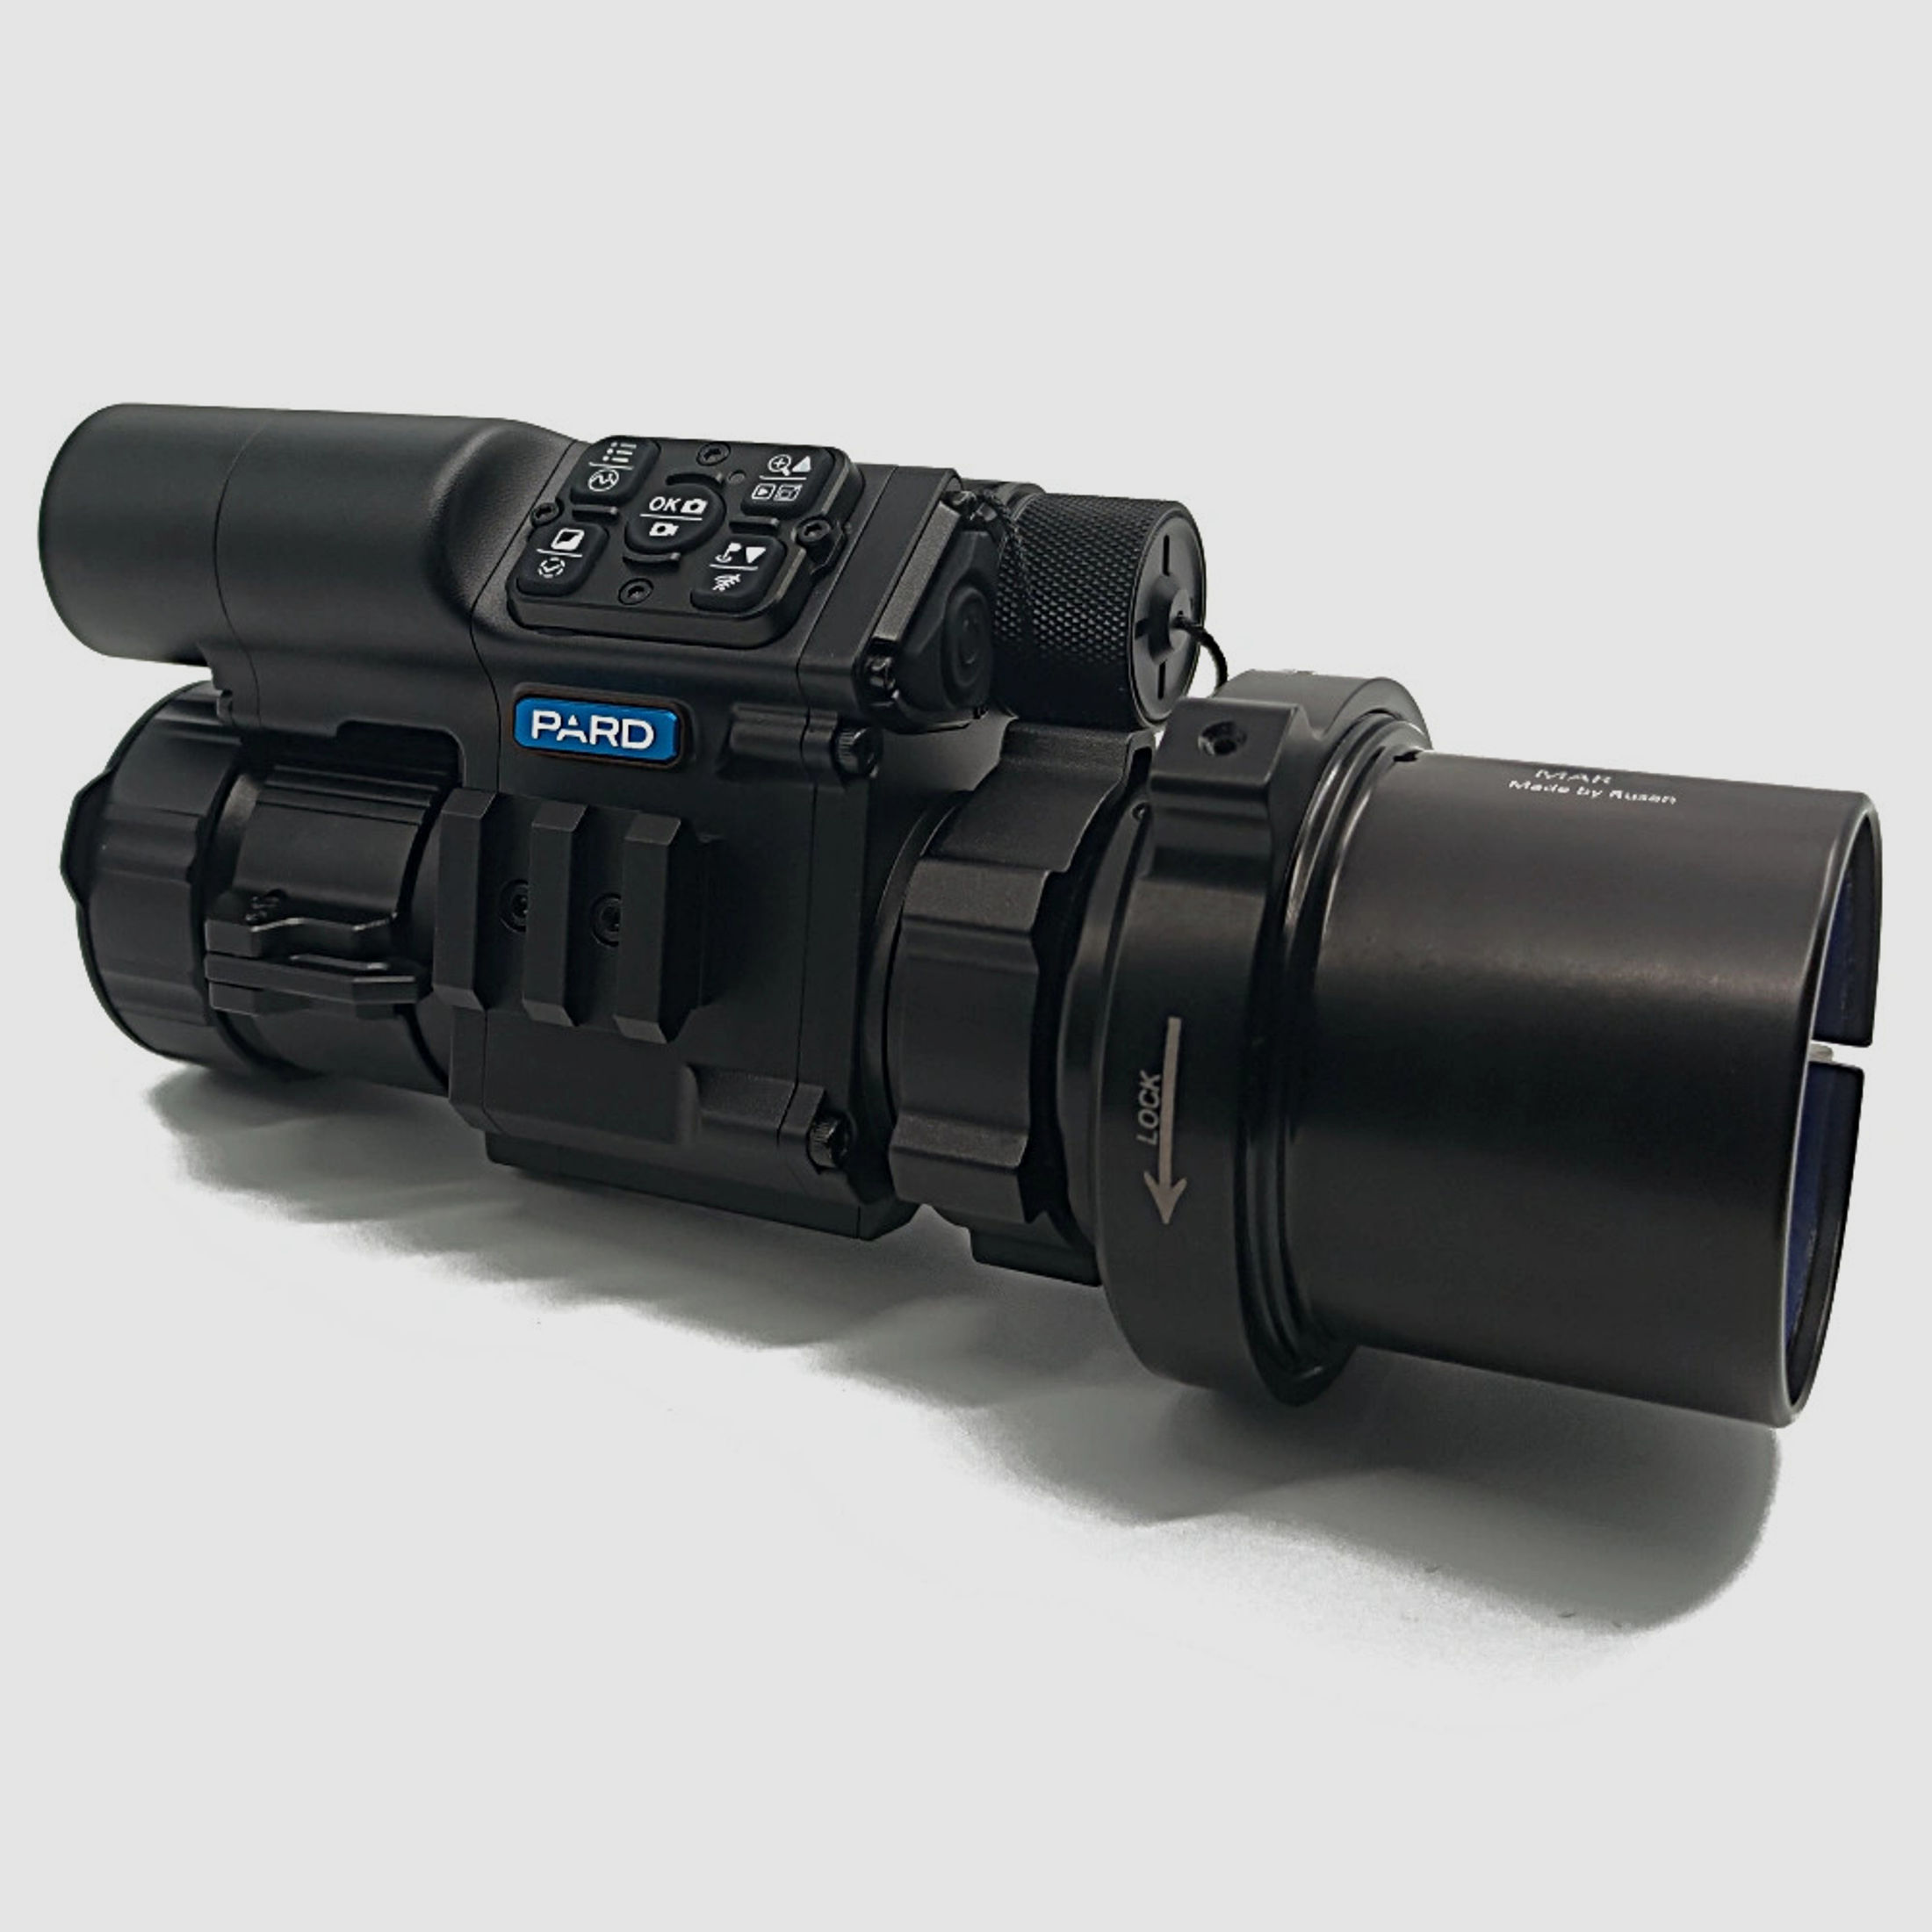 PARD FD1 Nachtsicht 3 in 1 Vorsatz, Monokular & Zielfernrohr - 850 nm mit LRF 63 mm RUSAN MAR + RUSAN MCR